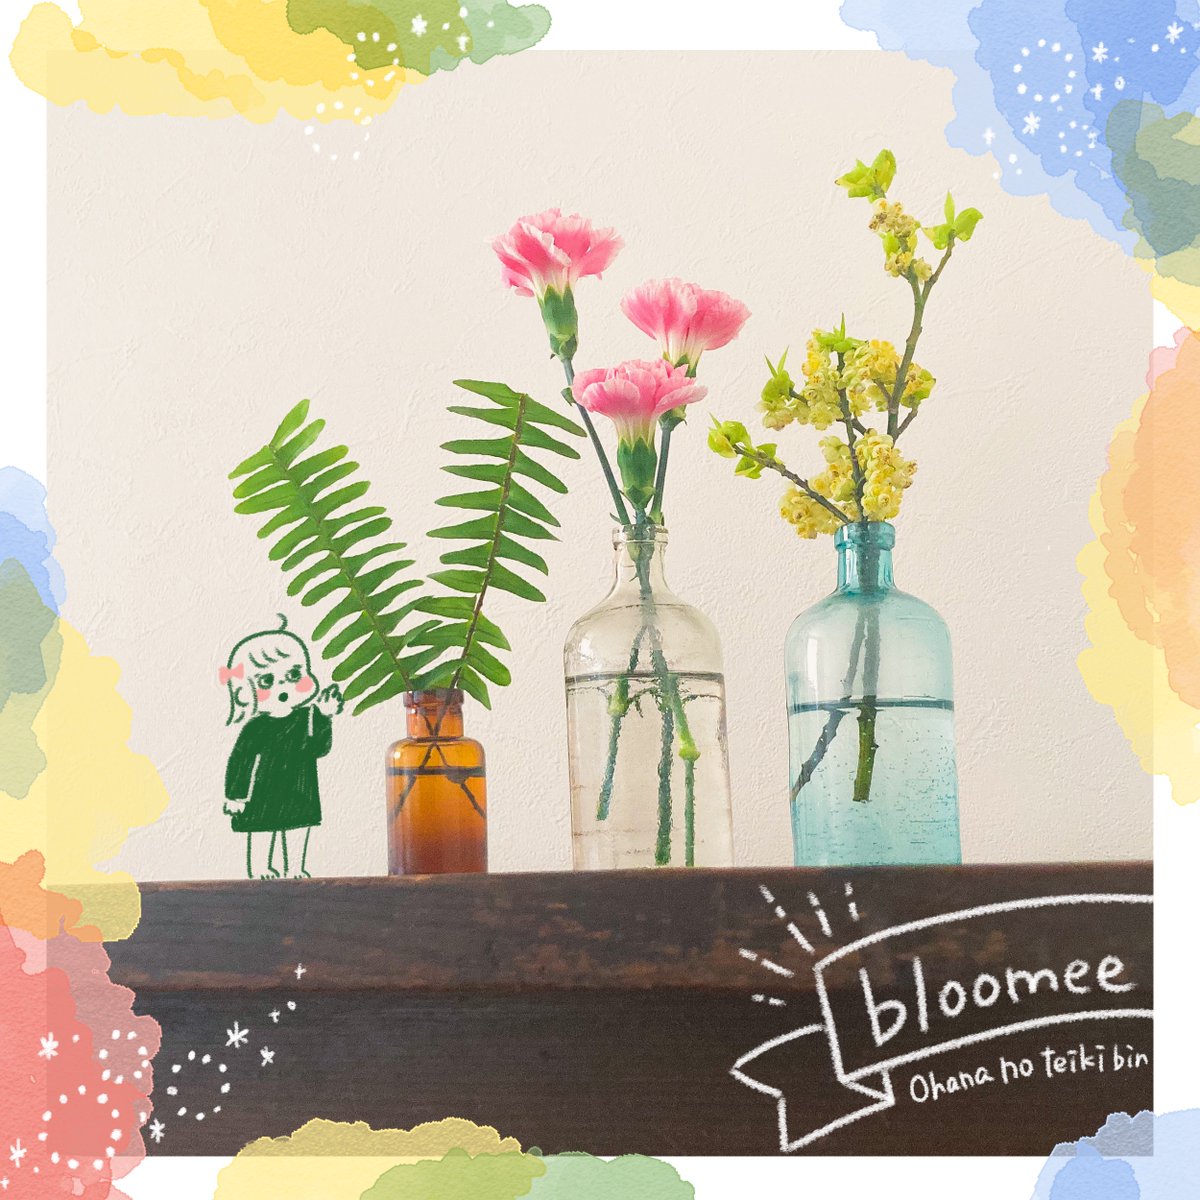 子供のおもちゃで部屋が荒れてても、お花が飾ってあるといい部屋に見える不思議…💐

bloomee(@bloomee_jp)

👇公式サイト👇
https://t.co/KqoIZPM0Mn…

#ブルーミー #bloomee #お花の定期便 #お花のサブスク #PR 